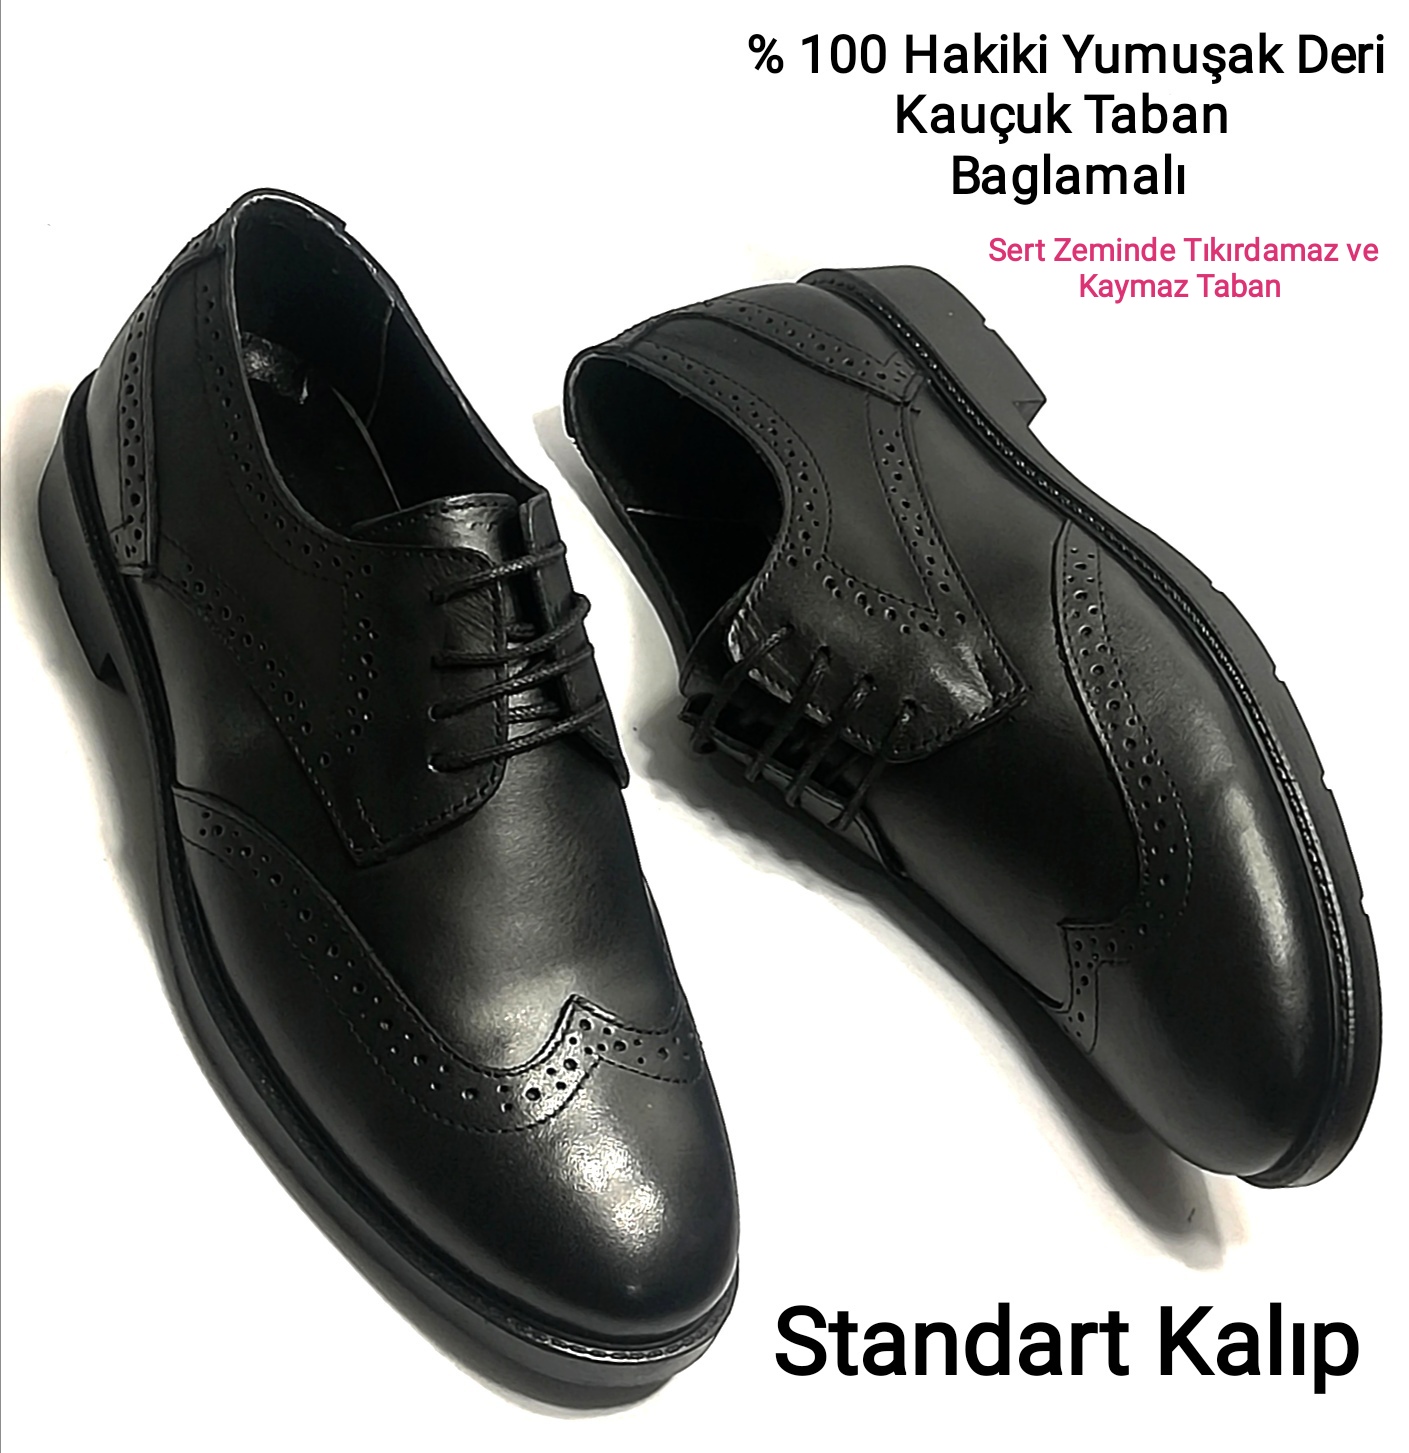 Özbek Siyah Hakiki Deri Günlük Ve Ofis İçin Klasik Ayakkabı